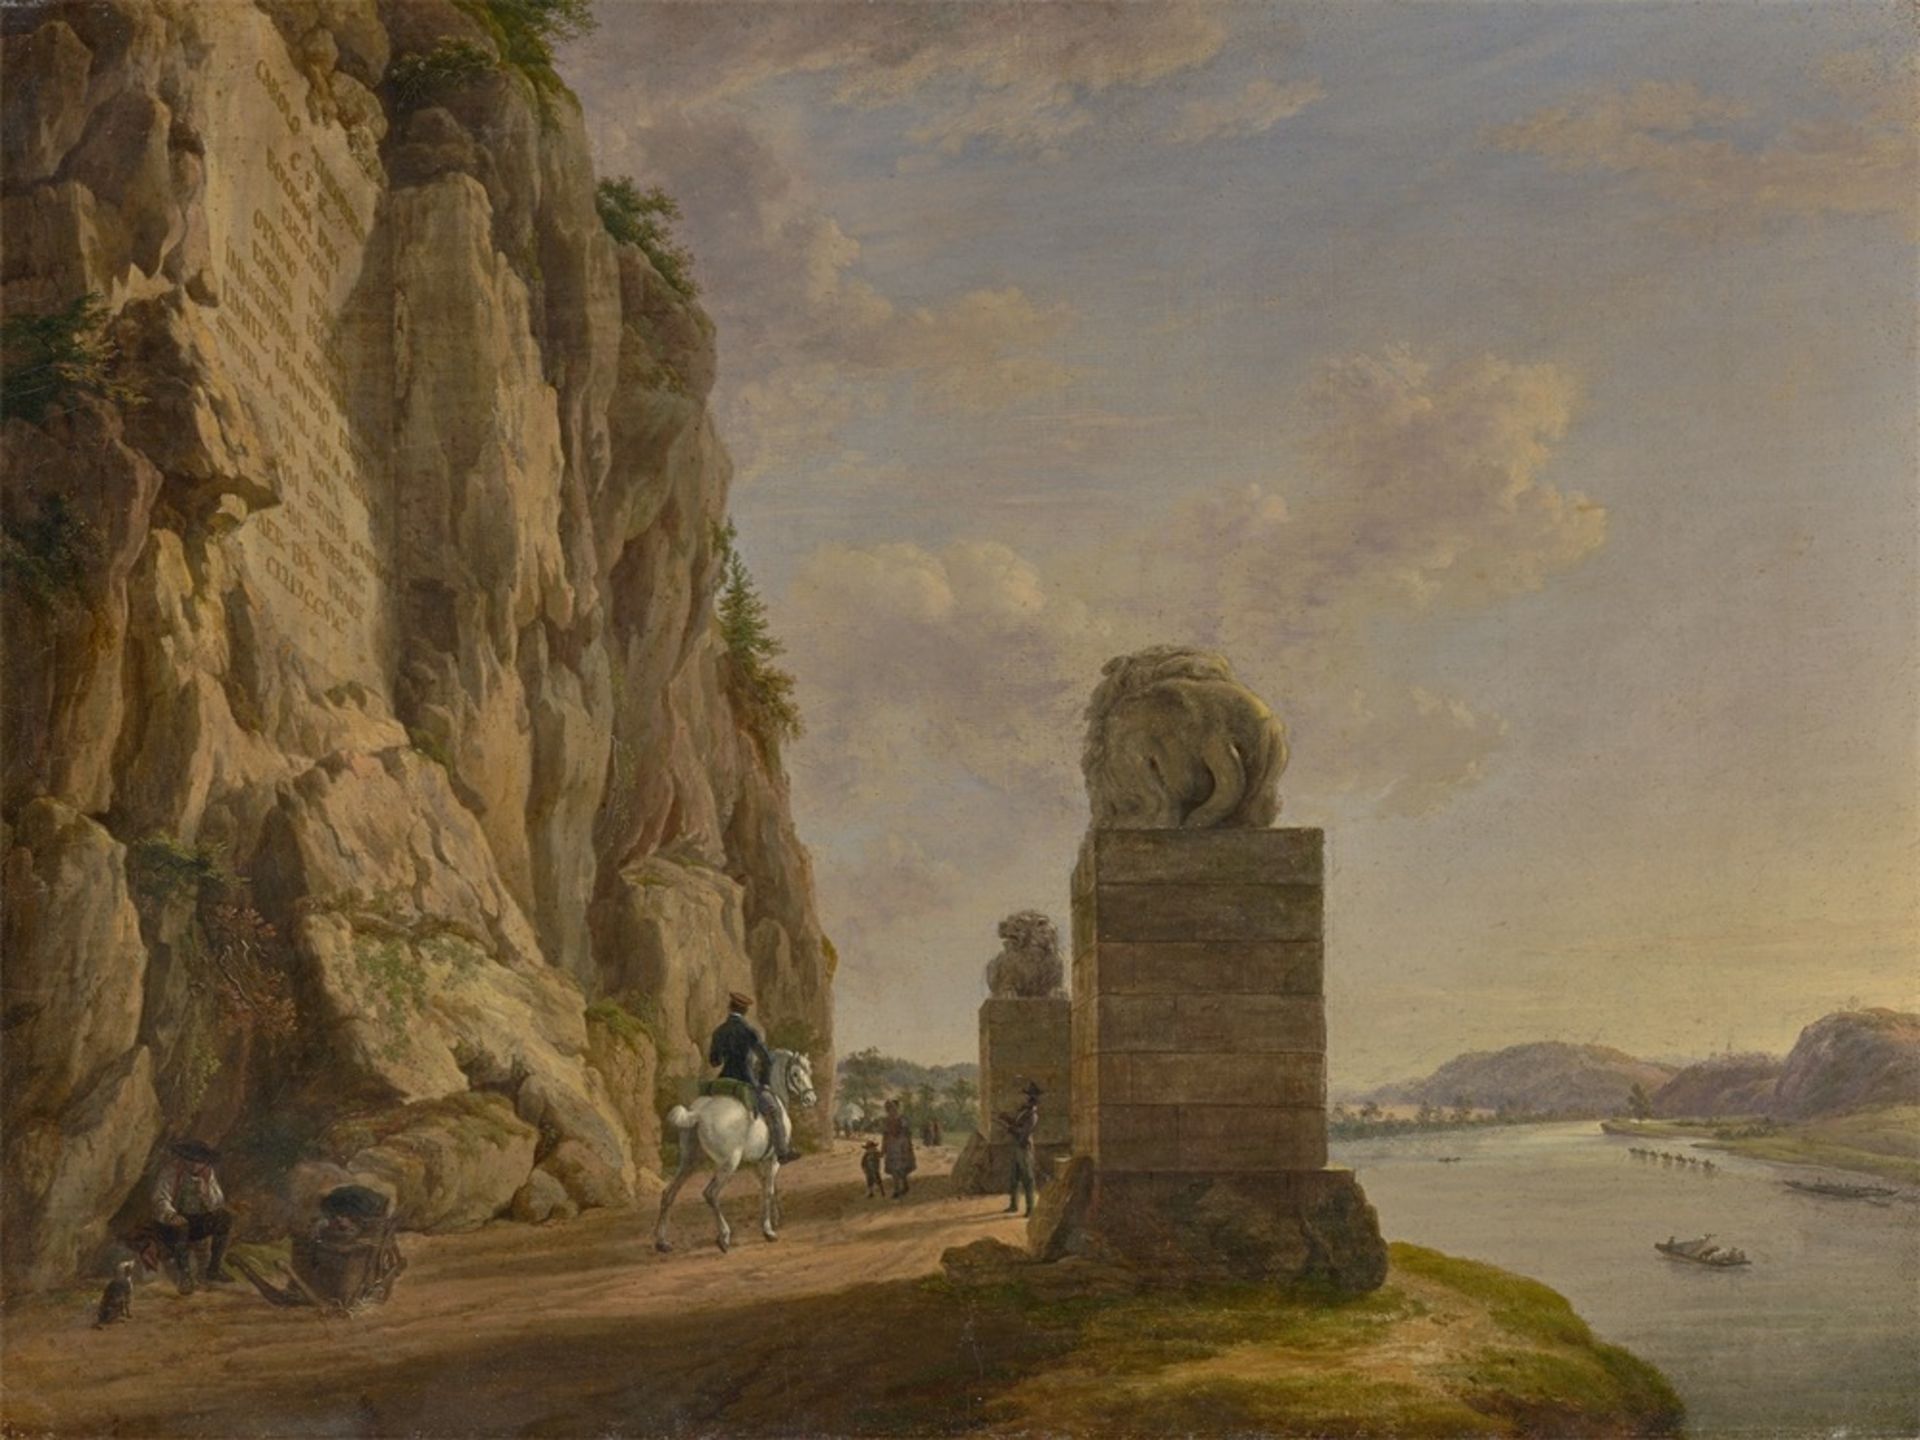 Anton Radl. The Lion Monument near Bad Abbach. Circa 1820